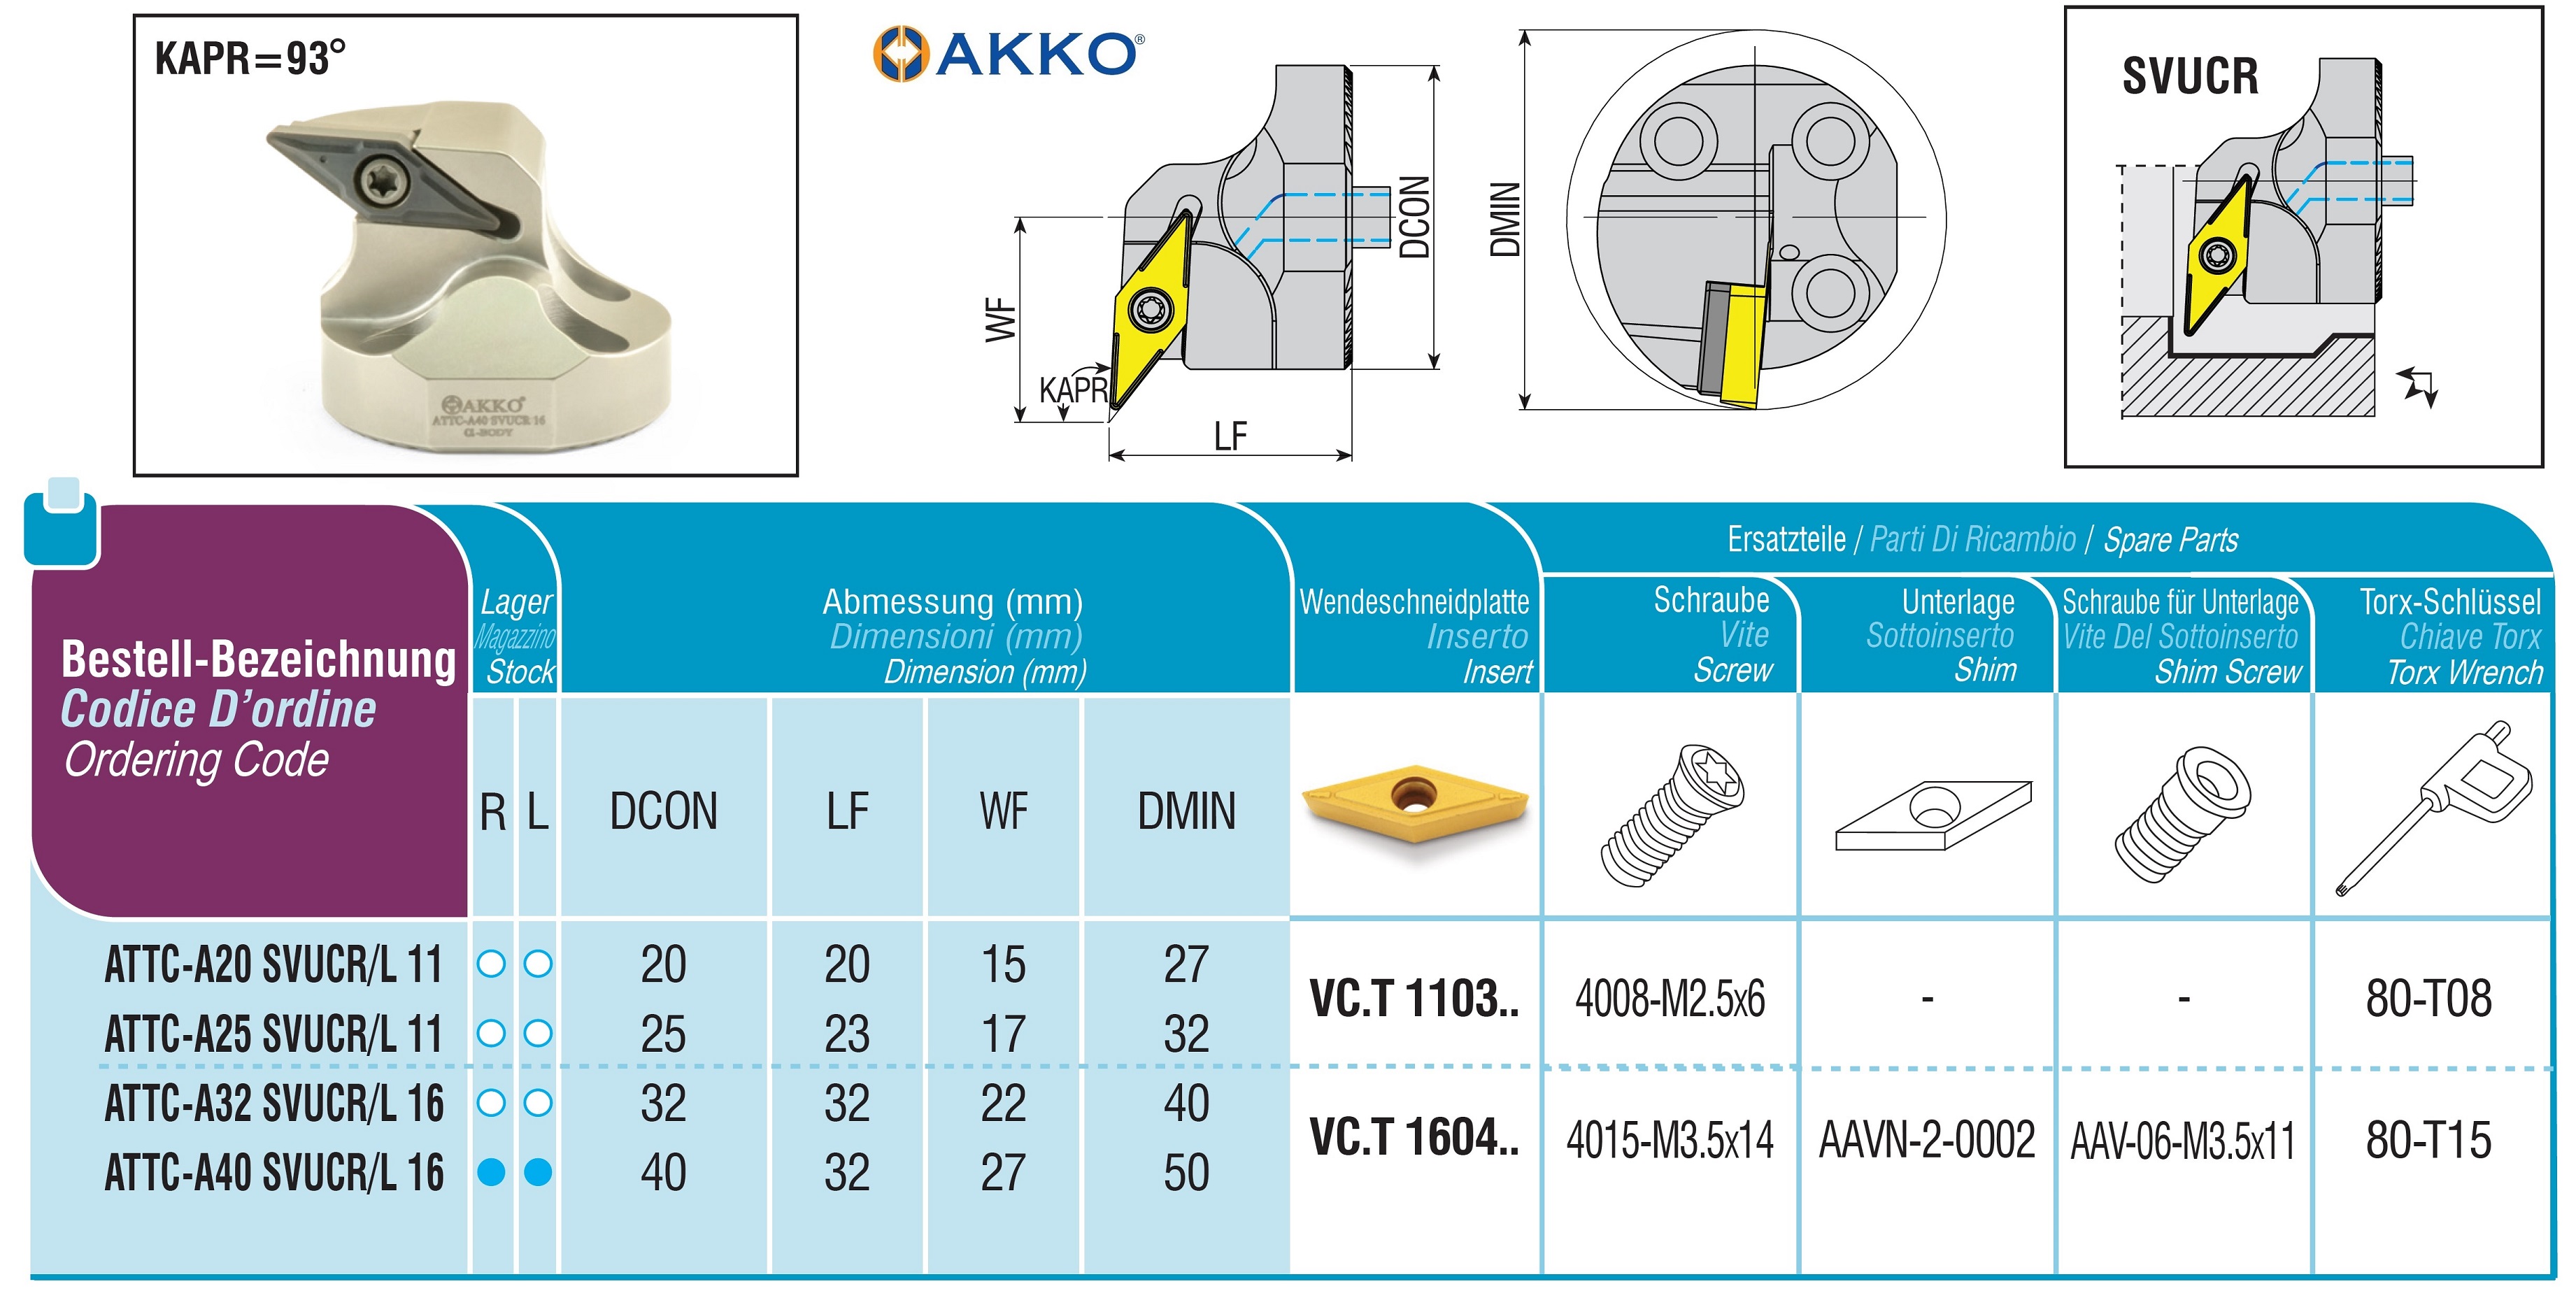 AKKO-Wechselkopf für schwingungsgedämpfte Bohrstange, ø = 40 mm, für Wendeplatte VC.T 1604.., mit Innenkühlung, für eine hohe Oberflächenqualität bei großer Auskraglänge, linke Ausführung
